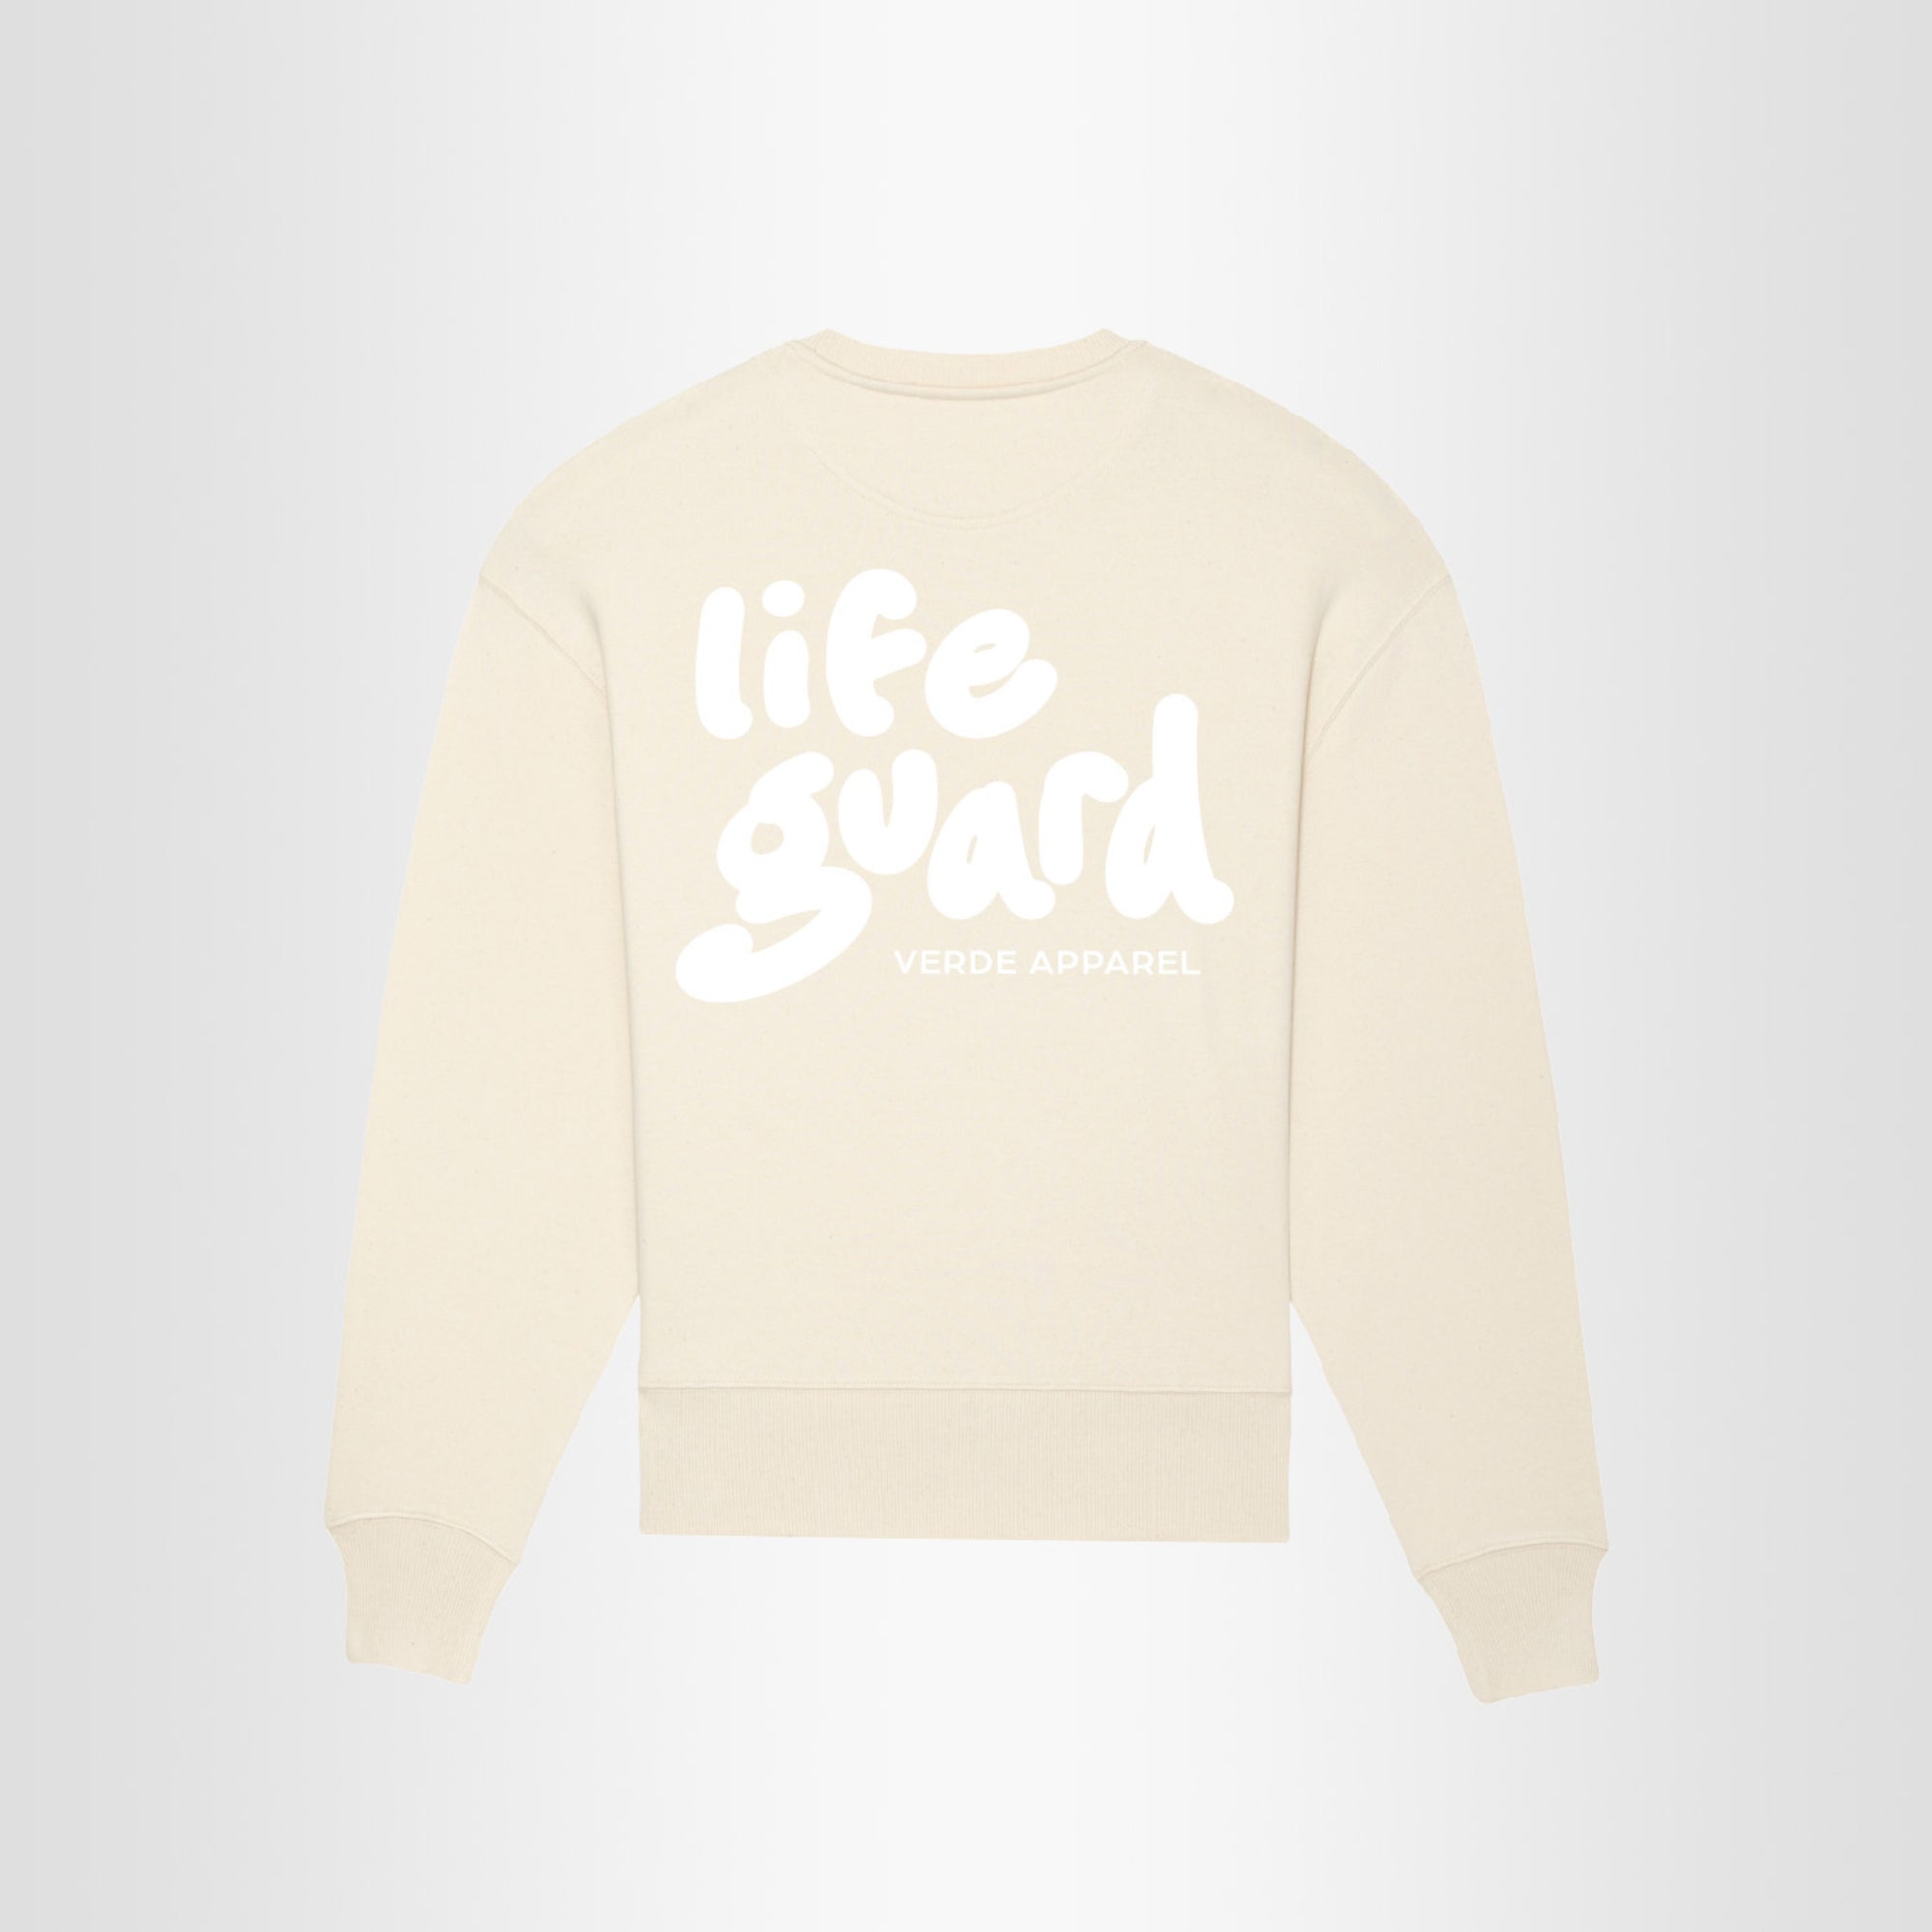 Life Guard Sweatshirt